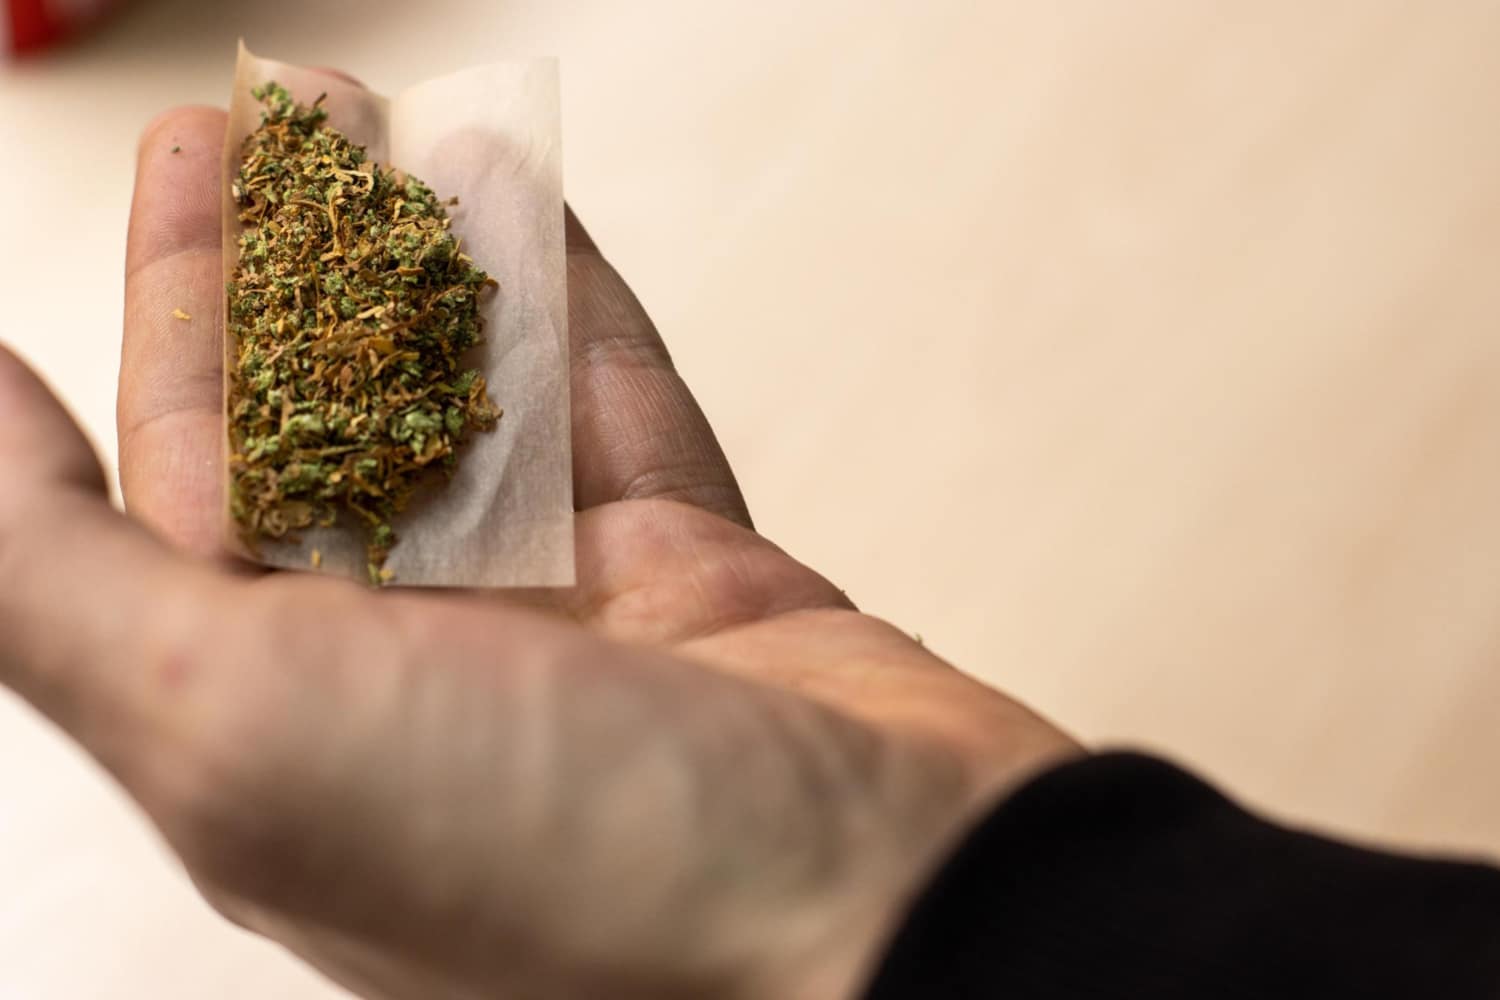 Viceministro de Paz sobre legalizar marihuana: “Creo que es el momento oportuno”